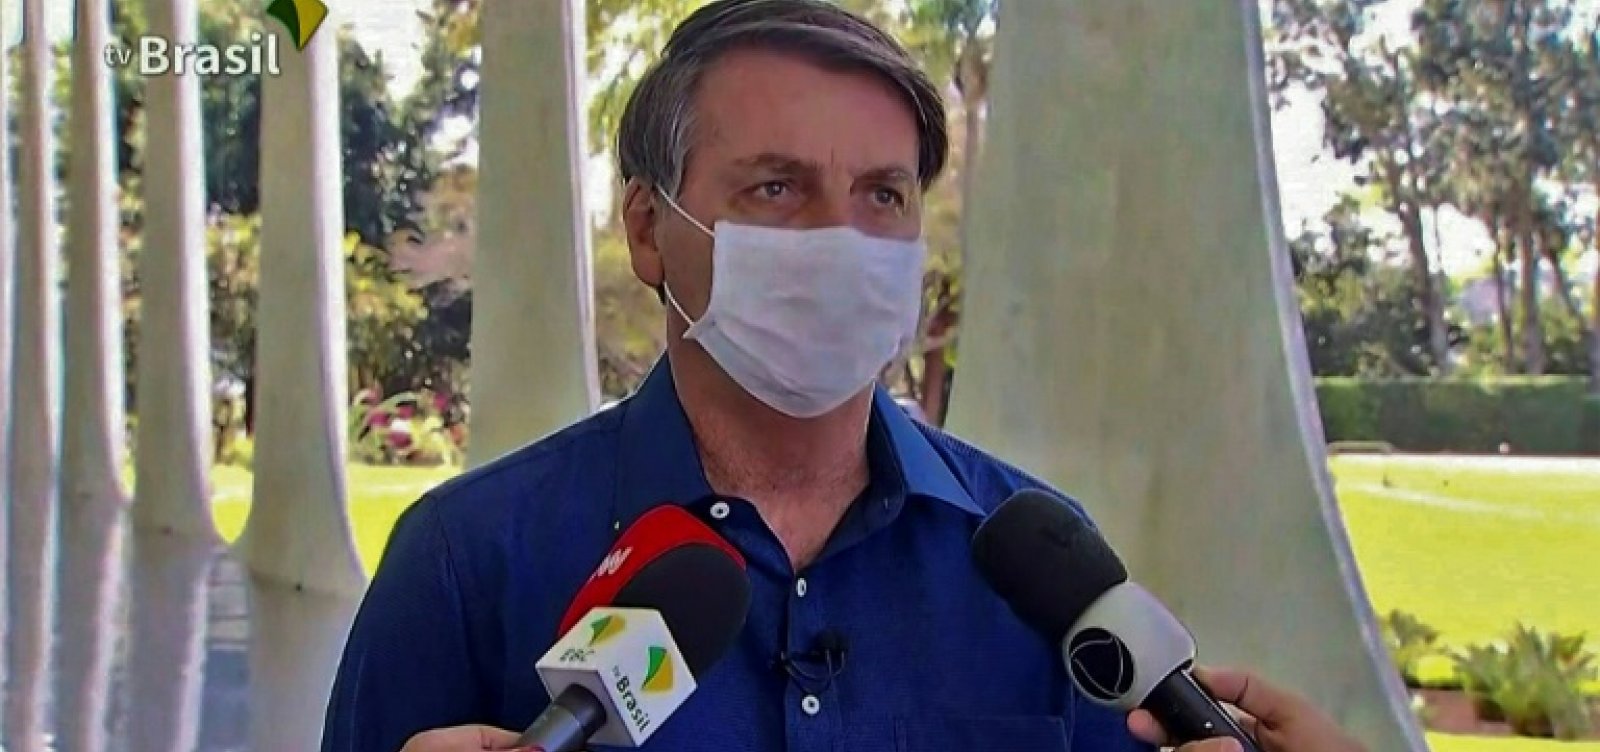 Jornalistas que tiveram contato com Bolsonaro durante entrevista são afastados por emissoras